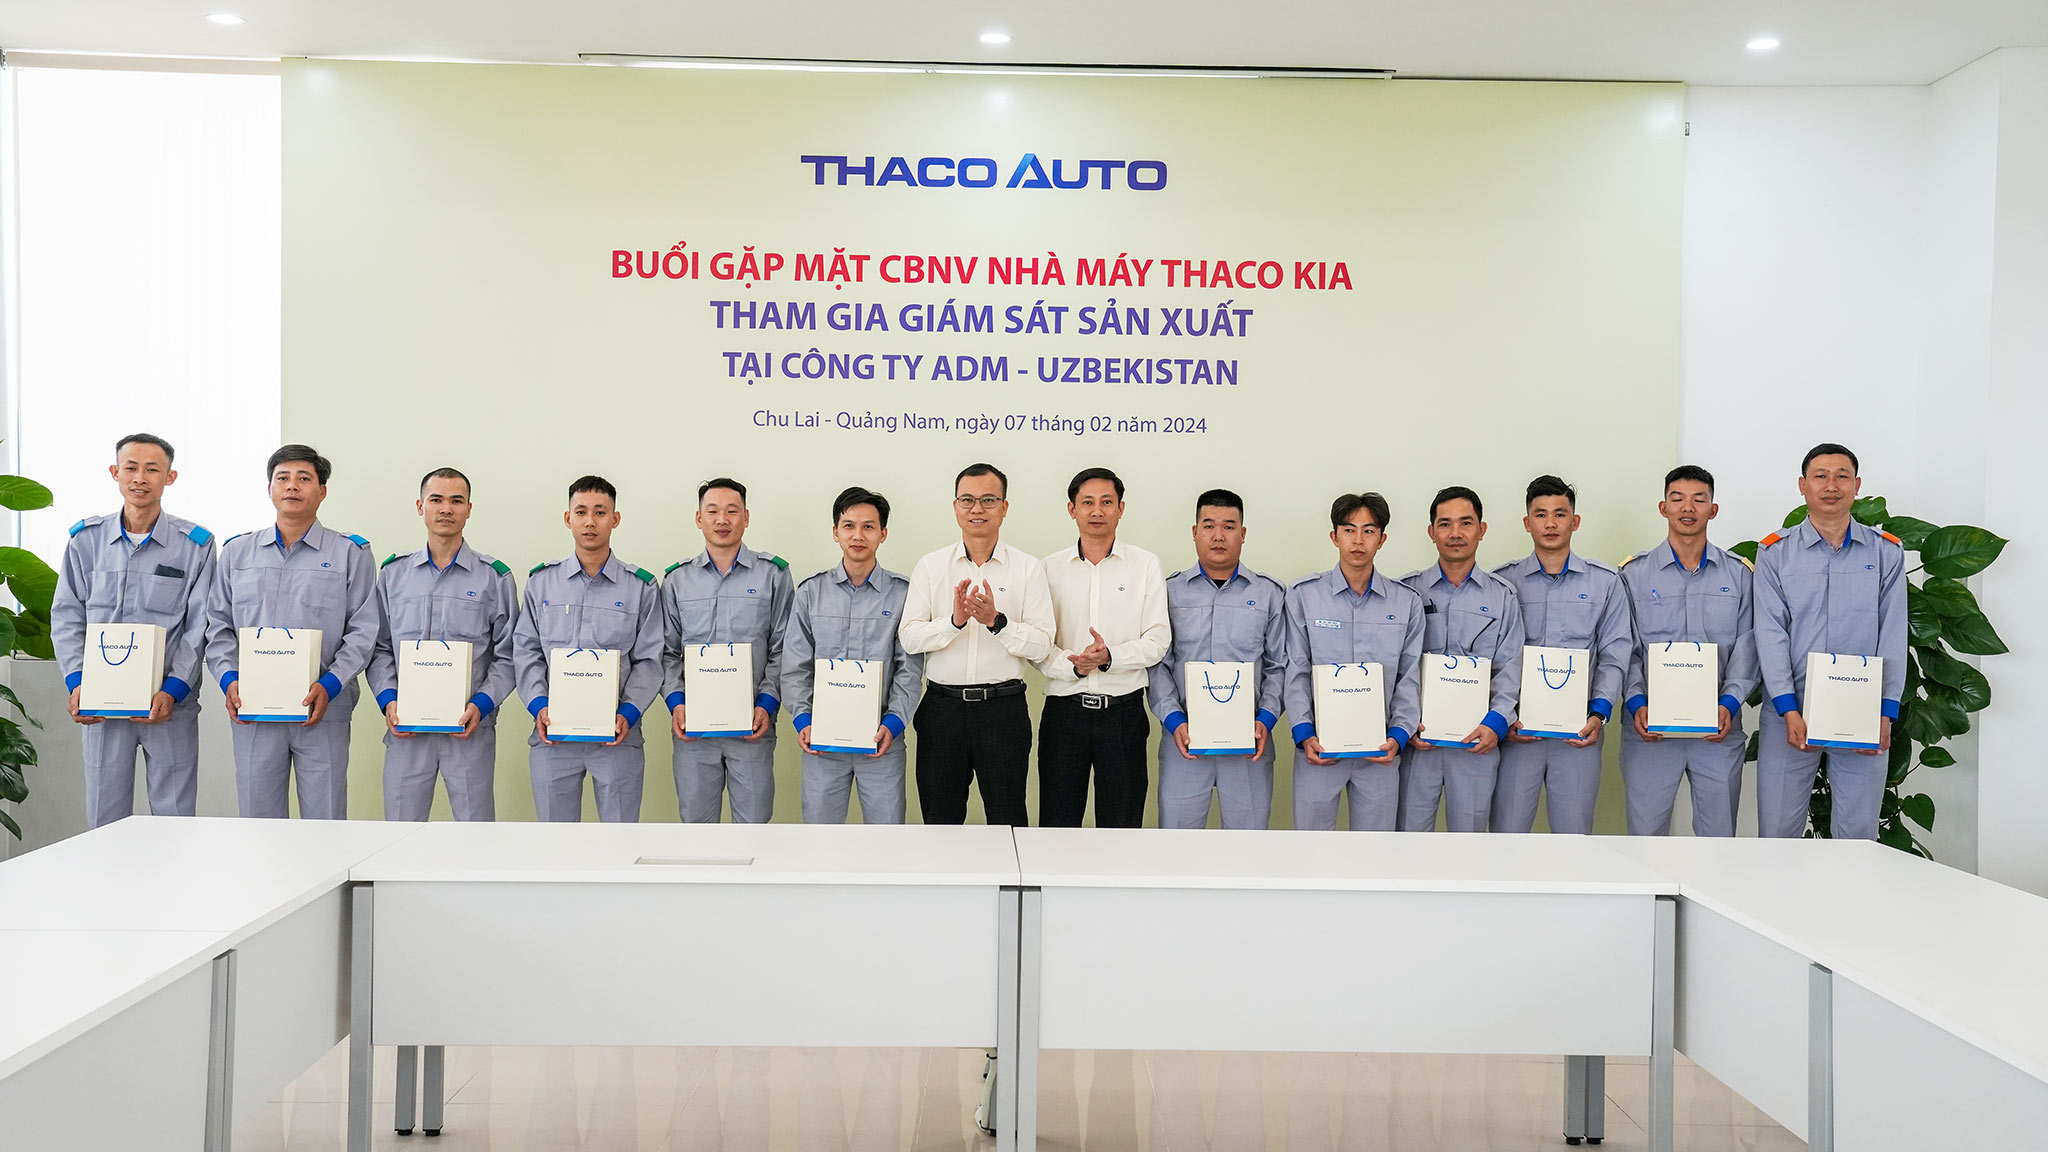 Nhà máy THACO KIA tham gia giám sát sản xuất xe Kia Sonet tại Uzbekistan thaco-kia-03.jpg